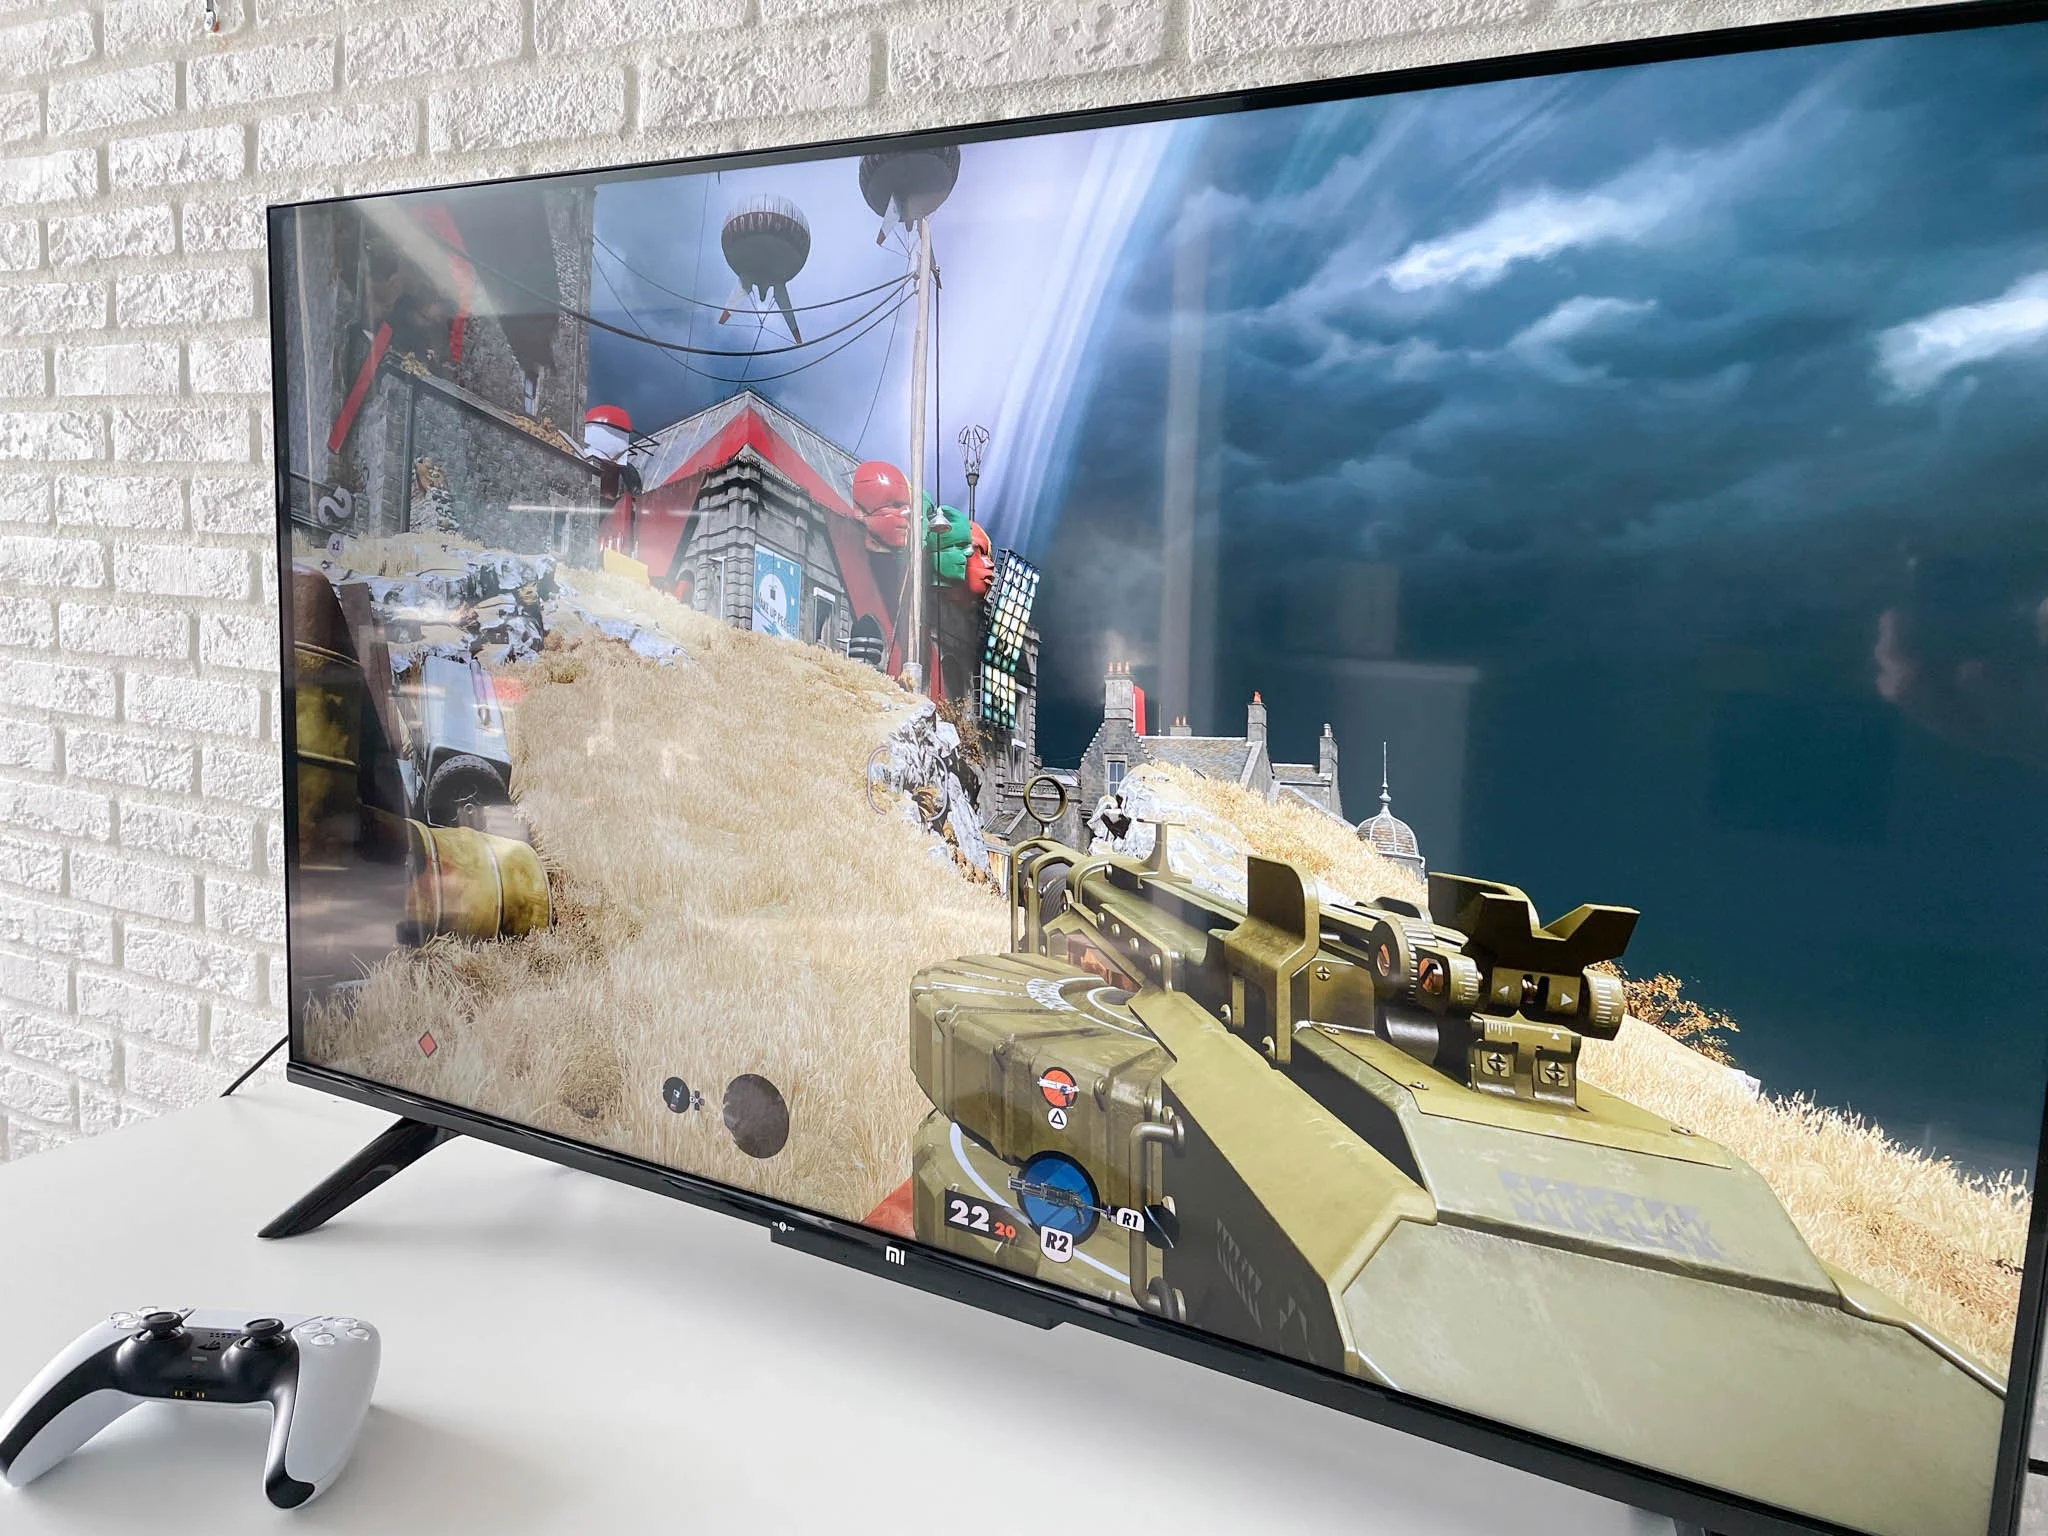 Обзор Xiaomi Mi TV P1: бюджетный 43-дюймовый 4К-телевизор для игр и кино - фото 8